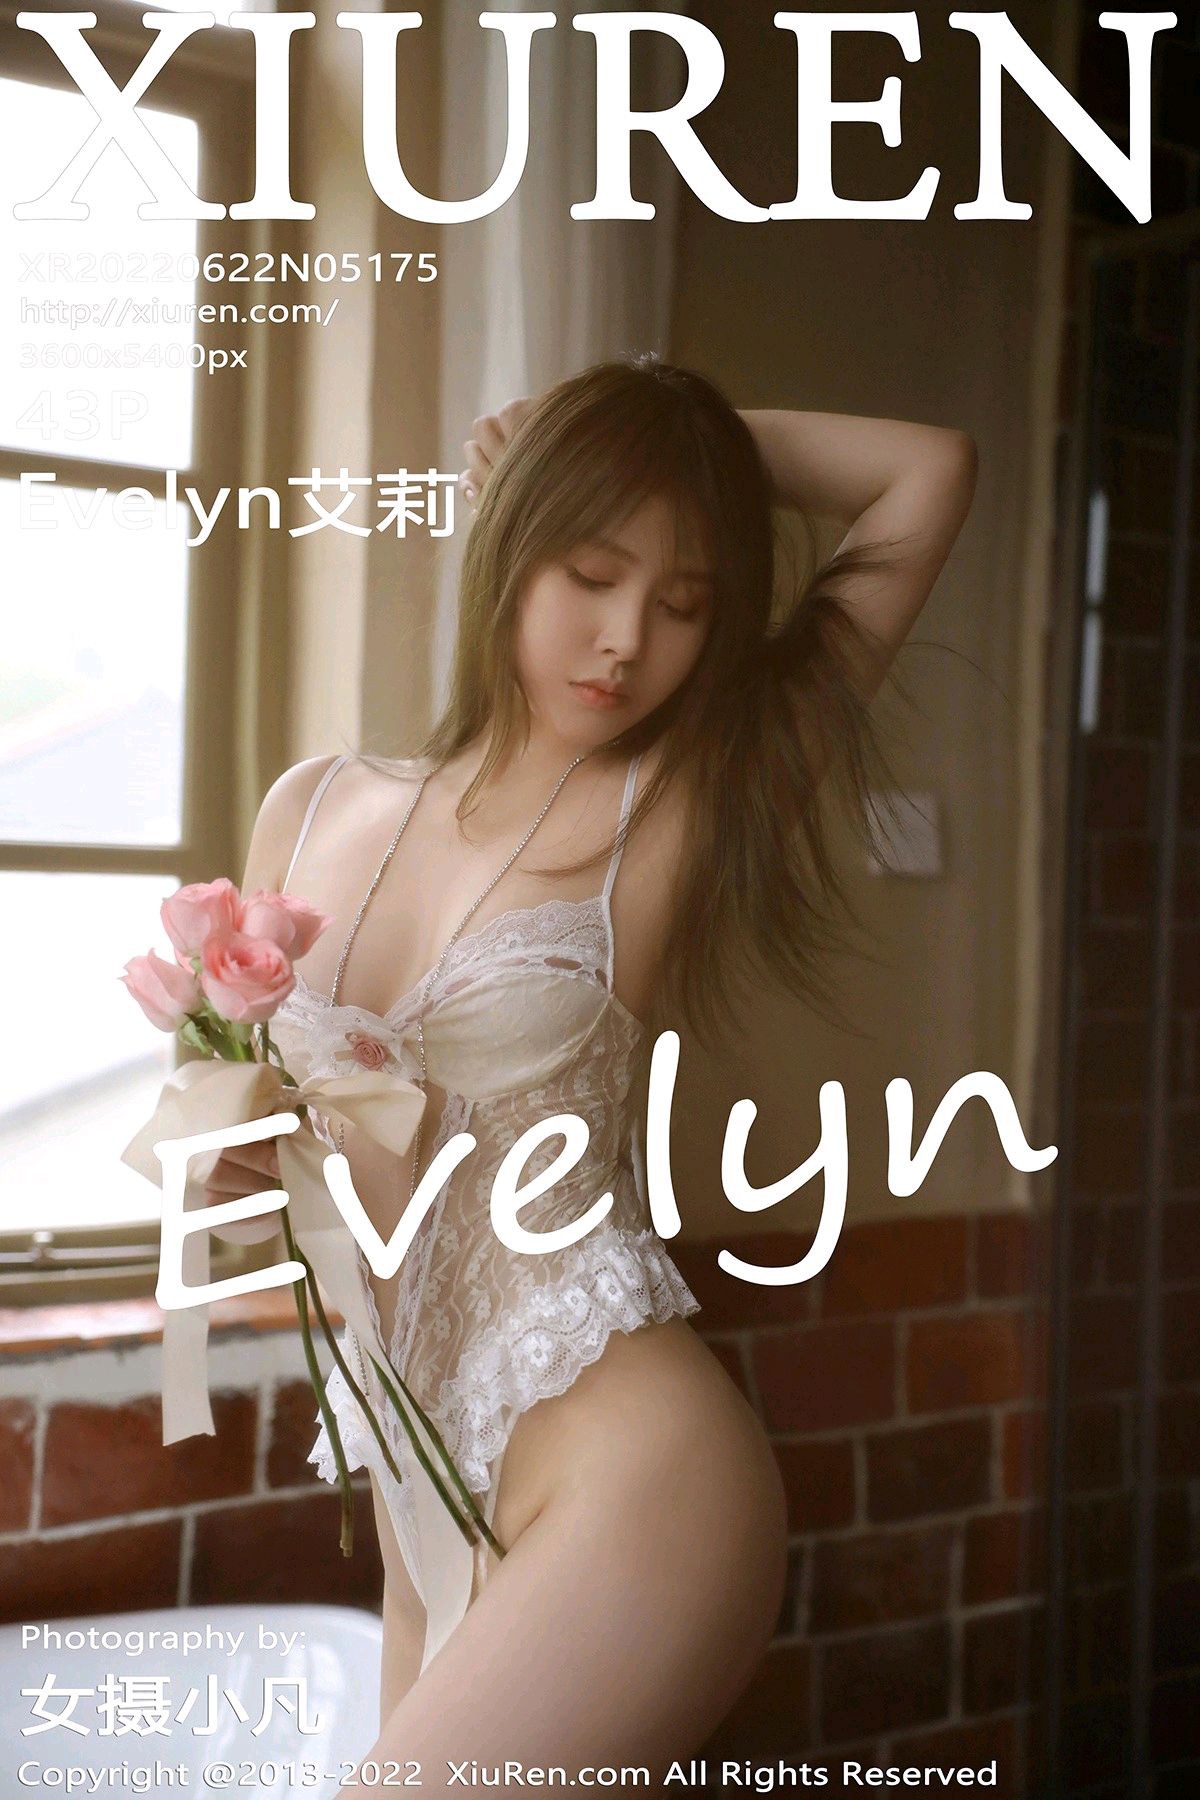 [XiuRen秀人网] No.5175 Evelyn艾莉